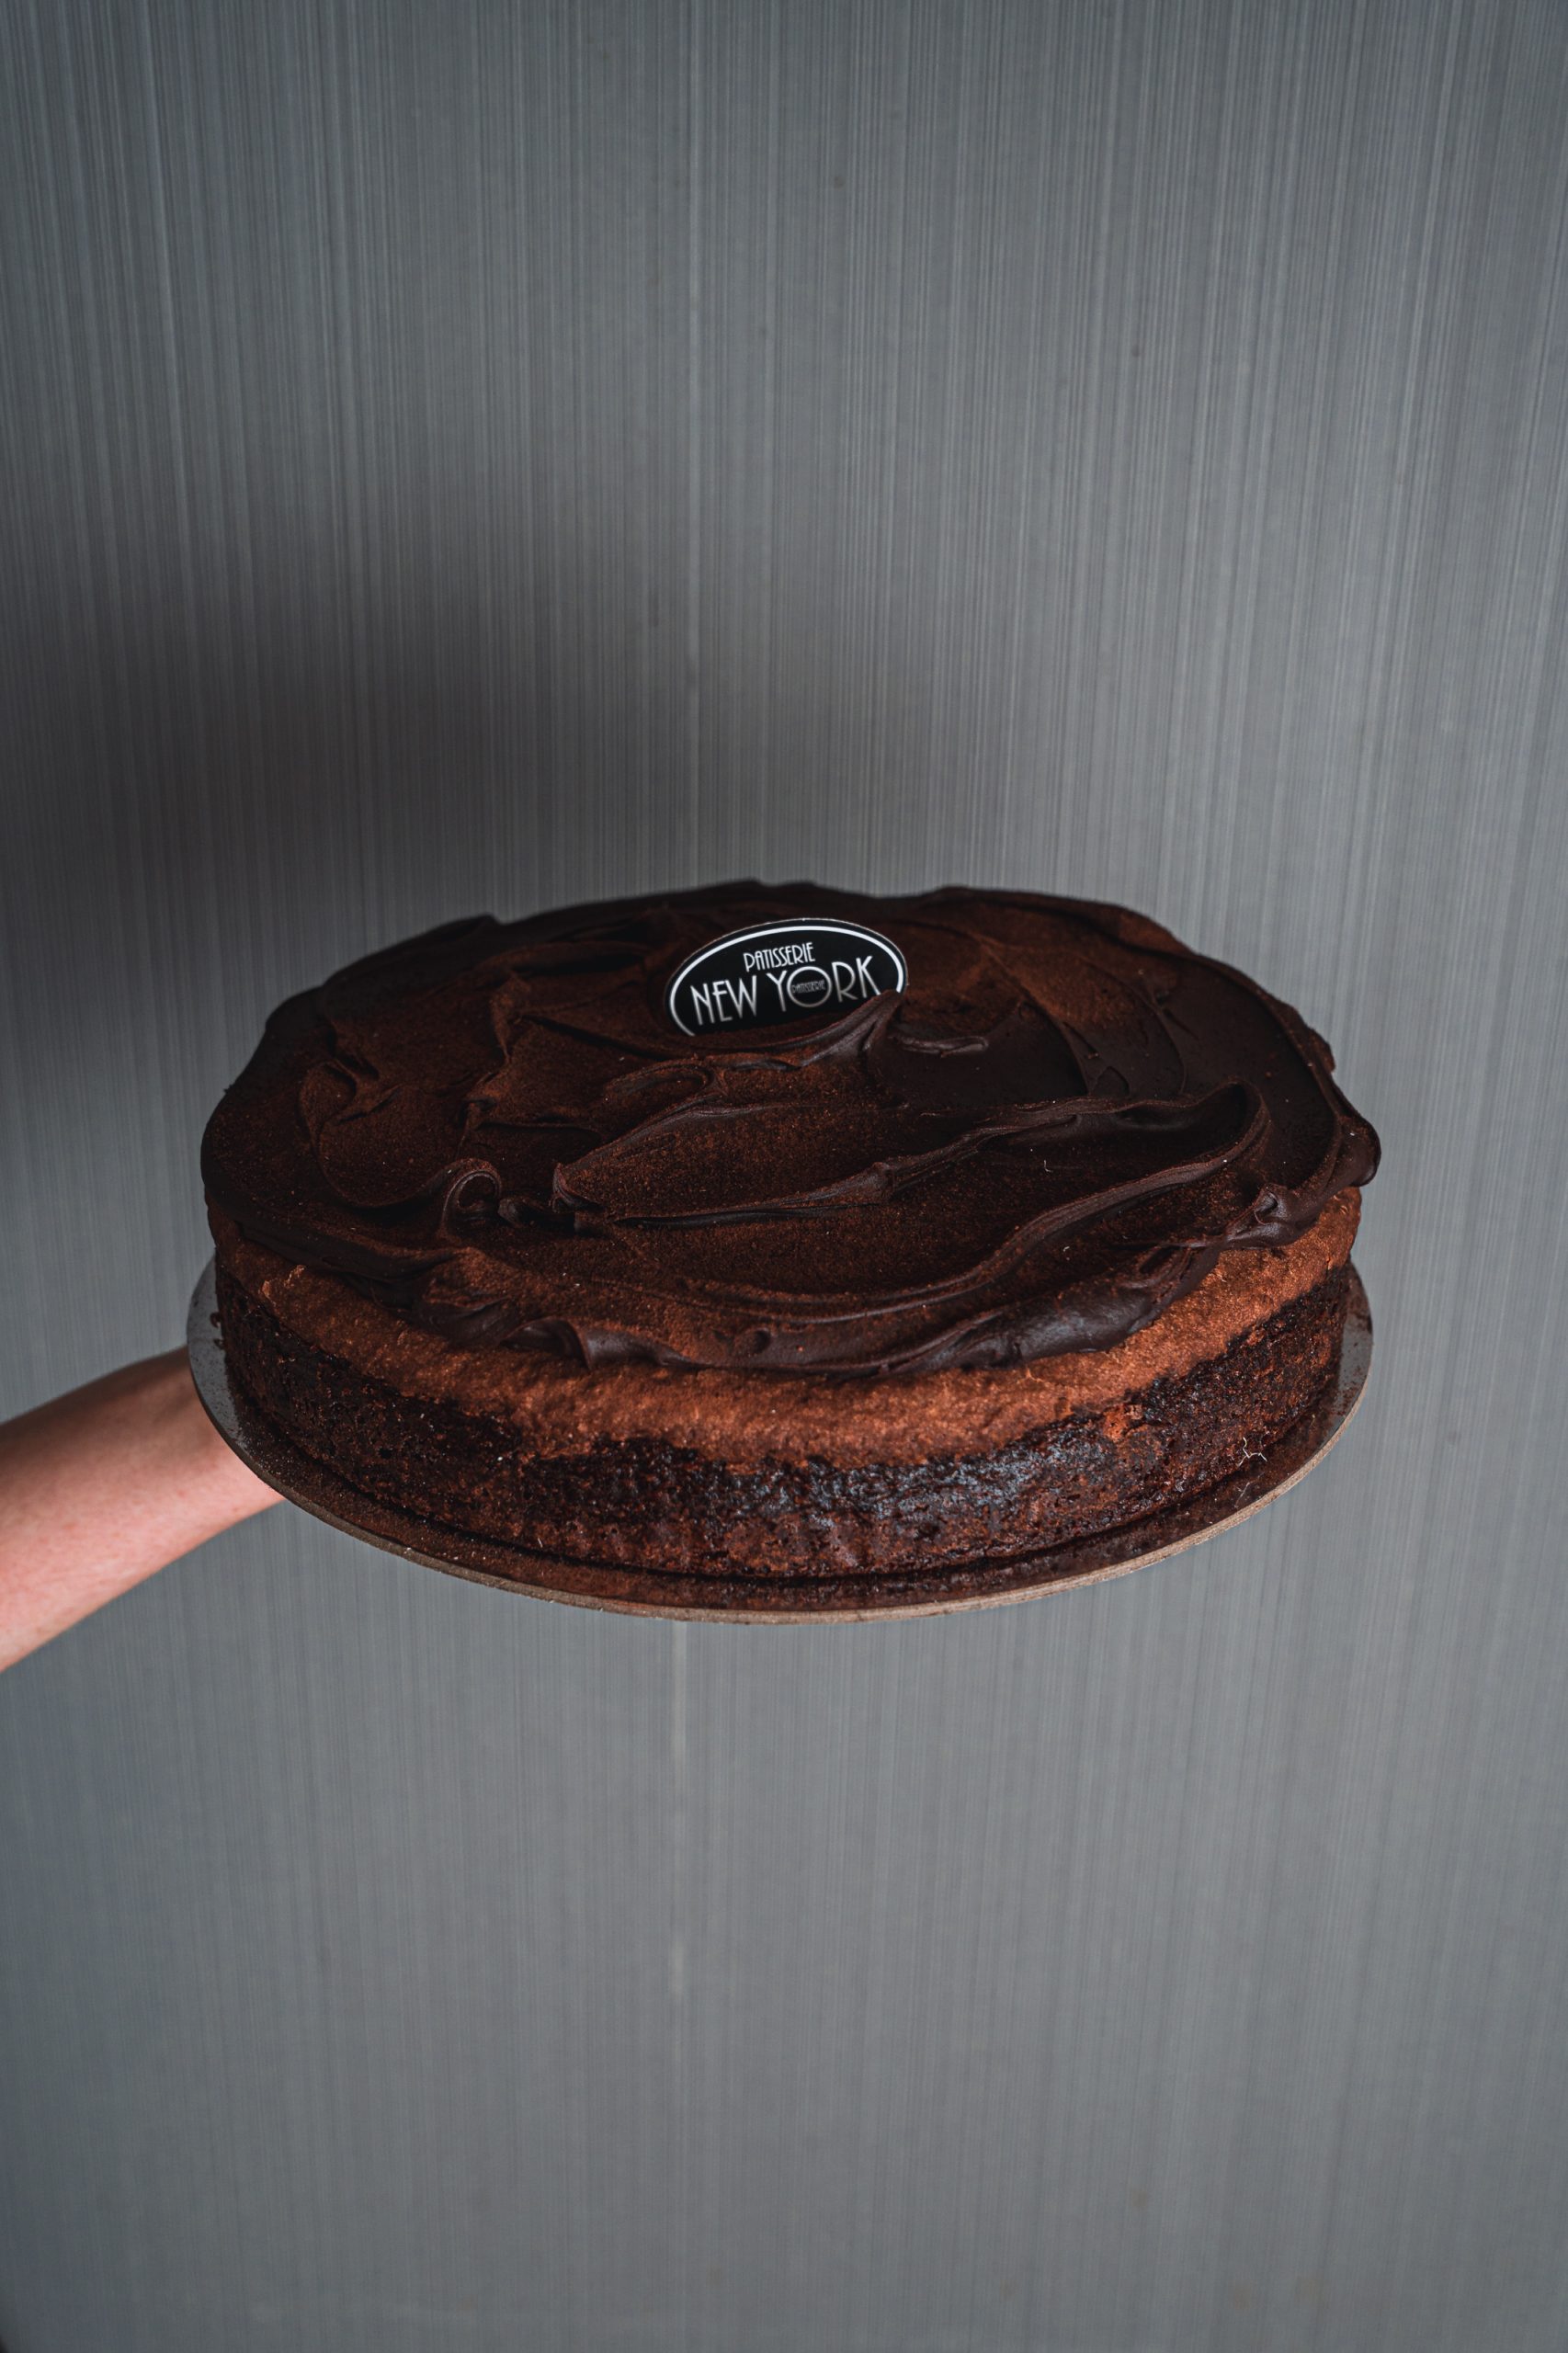 7-Up Cake & icing | Shelf Life Taste Test | Flickr